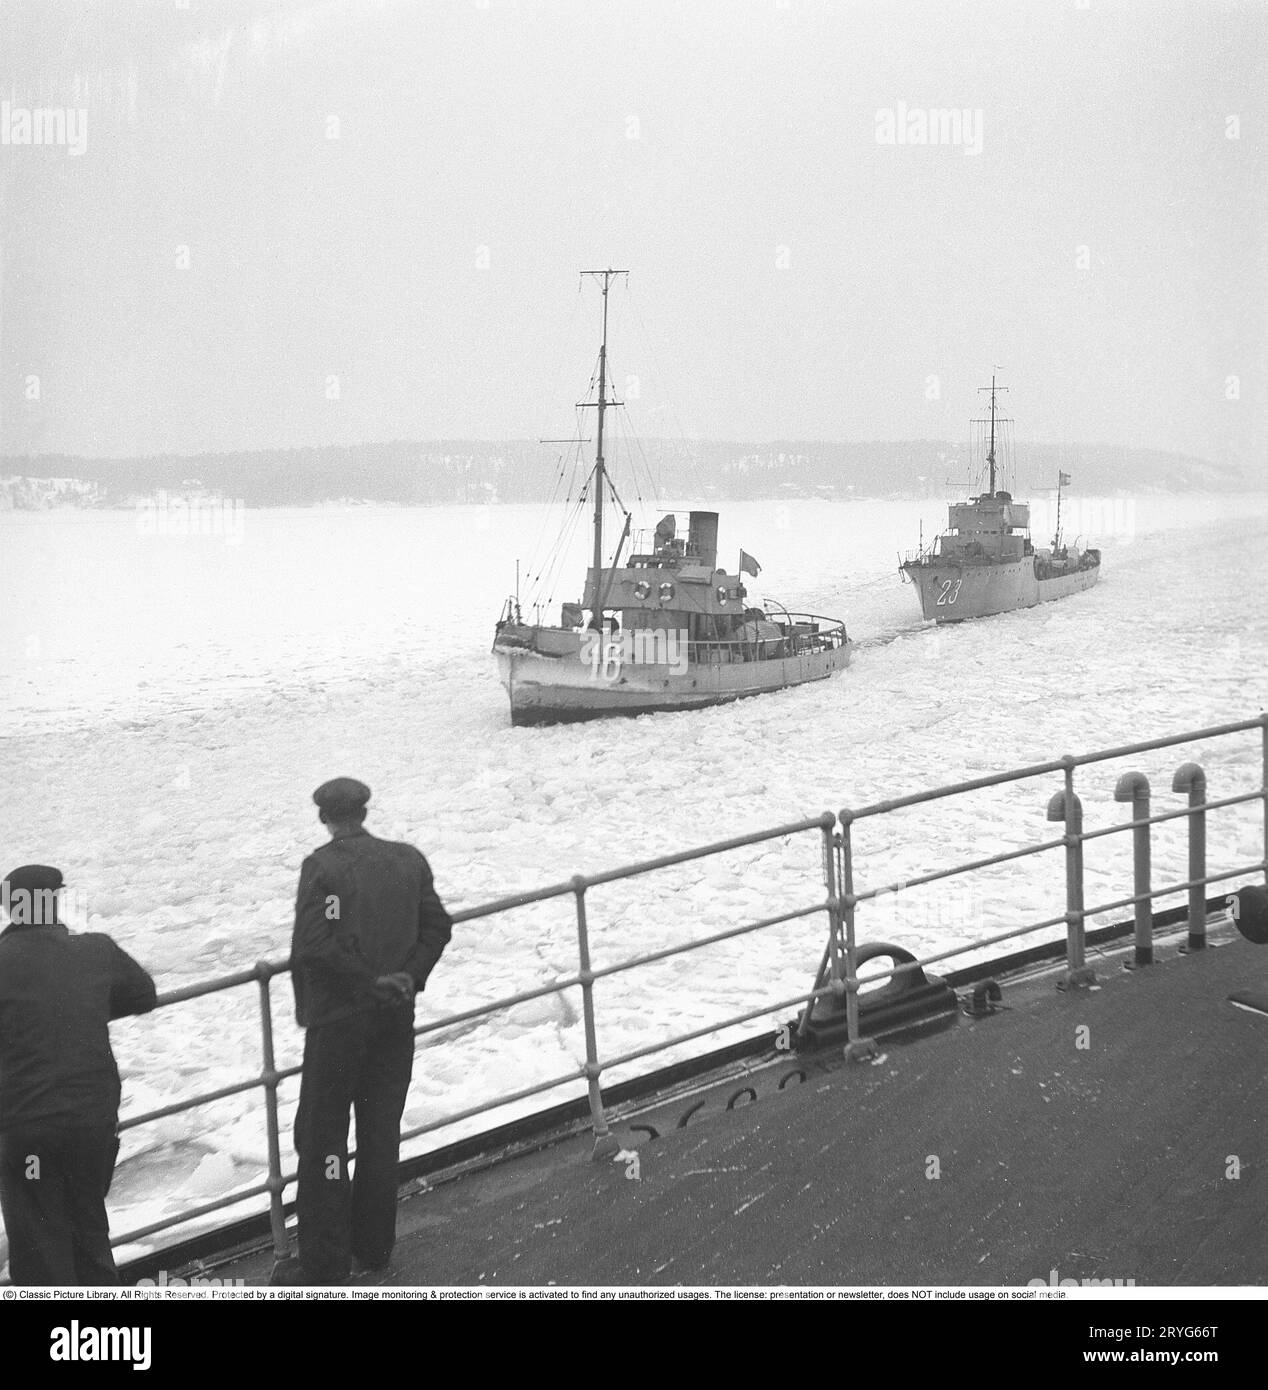 Inverno in mare negli anni '1940 Nella foto i membri dell'equipaggio del rompighiaccio svedese Ymer rompono il ghiaccio nelle acque interne della costa svedese nel febbraio 1941. Due navi stanno passando nel canale di ghiaccio che si forma dietro la rompighiaccio. La rompighiaccio Ymer fu costruita nel Malmö 1931-1933 e servì come rompighiaccio statale per 44 anni fino a quando non fu venduta e demolita nel 1976. Gli inverni durante la seconda guerra mondiale erano spesso eccezionalmente freddi e il ghiaccio divenne un grande problema per l'industria navale e per l'esercito. Ymer è stato il primo grande rompighiaccio marino a utilizzare una propulsione elettrica diesel Foto Stock